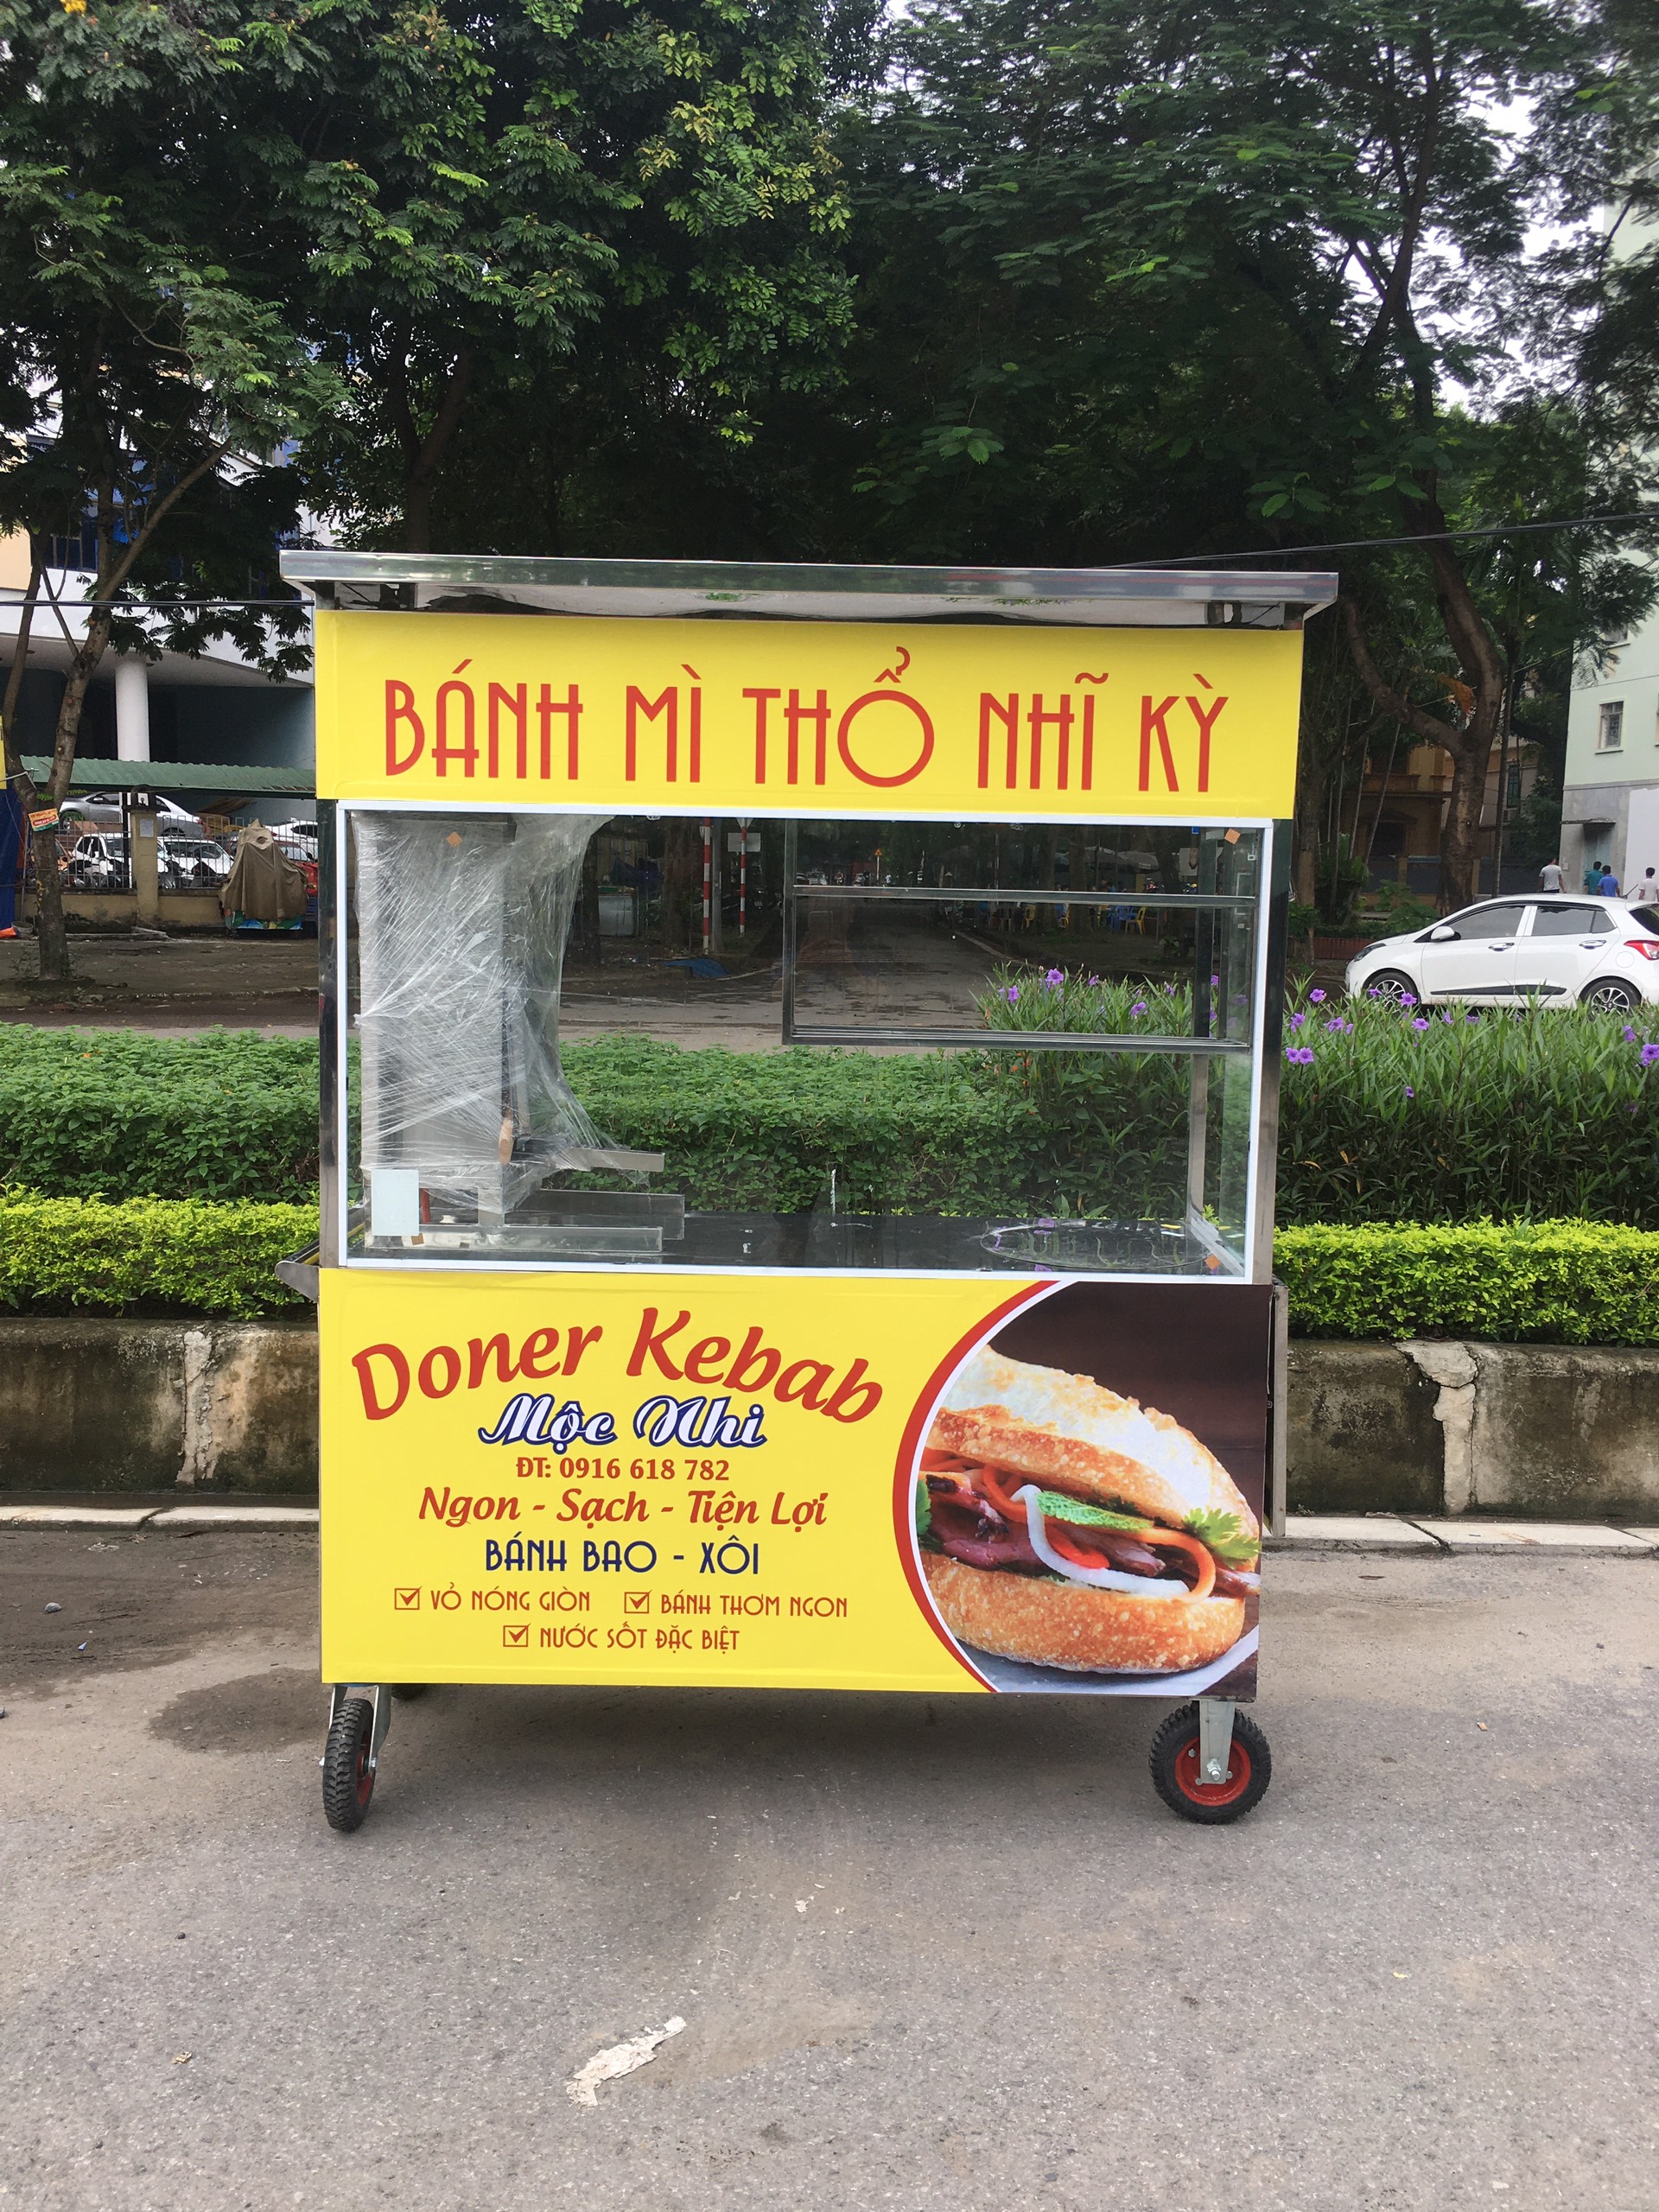 Xe bánh mì thổ nhĩ kỳ tại Quang Huy